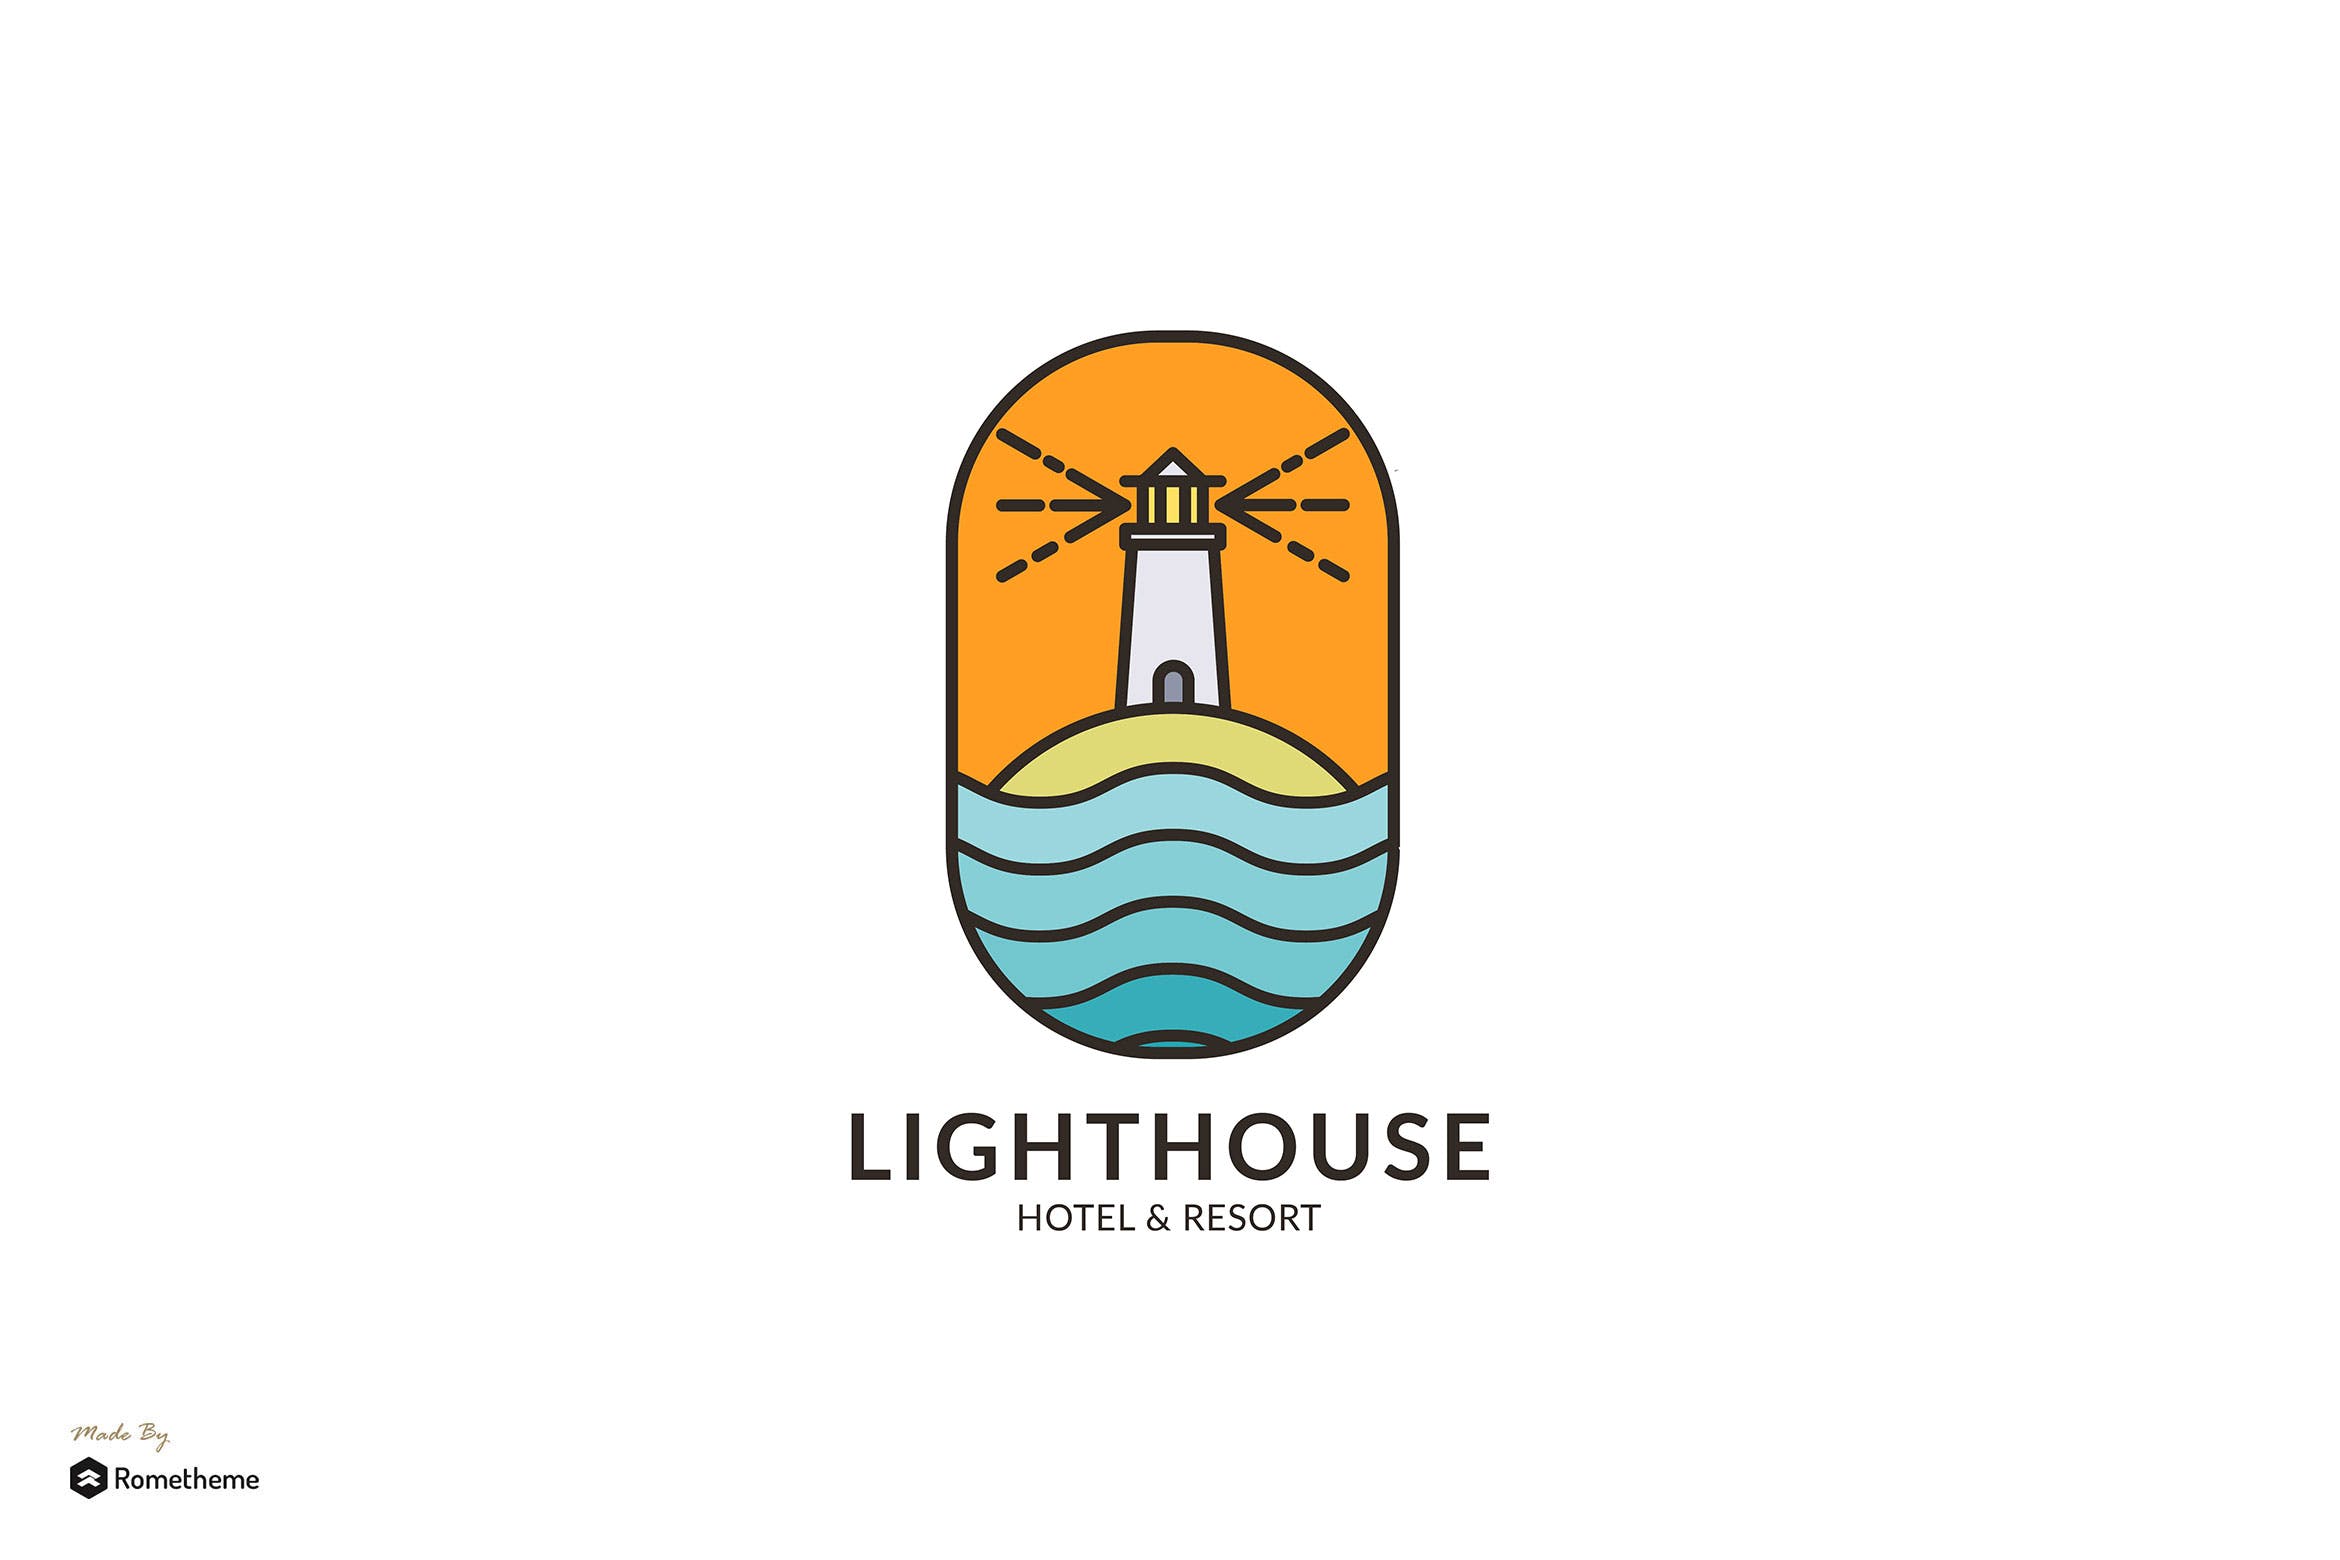 灯塔酒店/度假村商标&品牌Logo设计16图库精选模板 Lighthouse Hotel & Resort – Logo Template RB插图